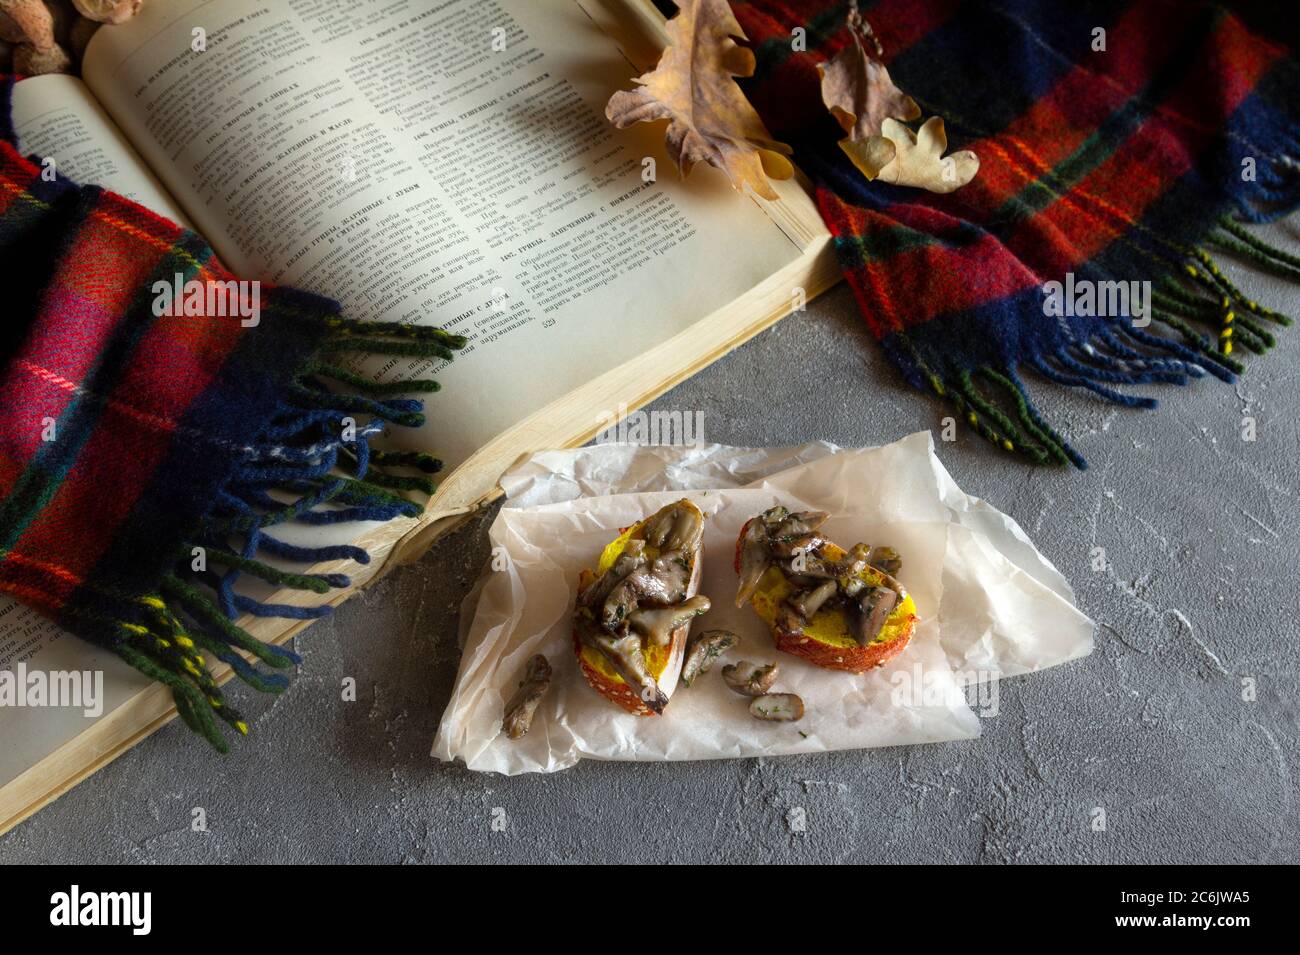 Funghi di bosco agarici di miele (Armillaria mellea). Composizione autunno ancora vita. Funghi fritti dorati sul pane con libro di cucina su tavola scura. FL Foto Stock